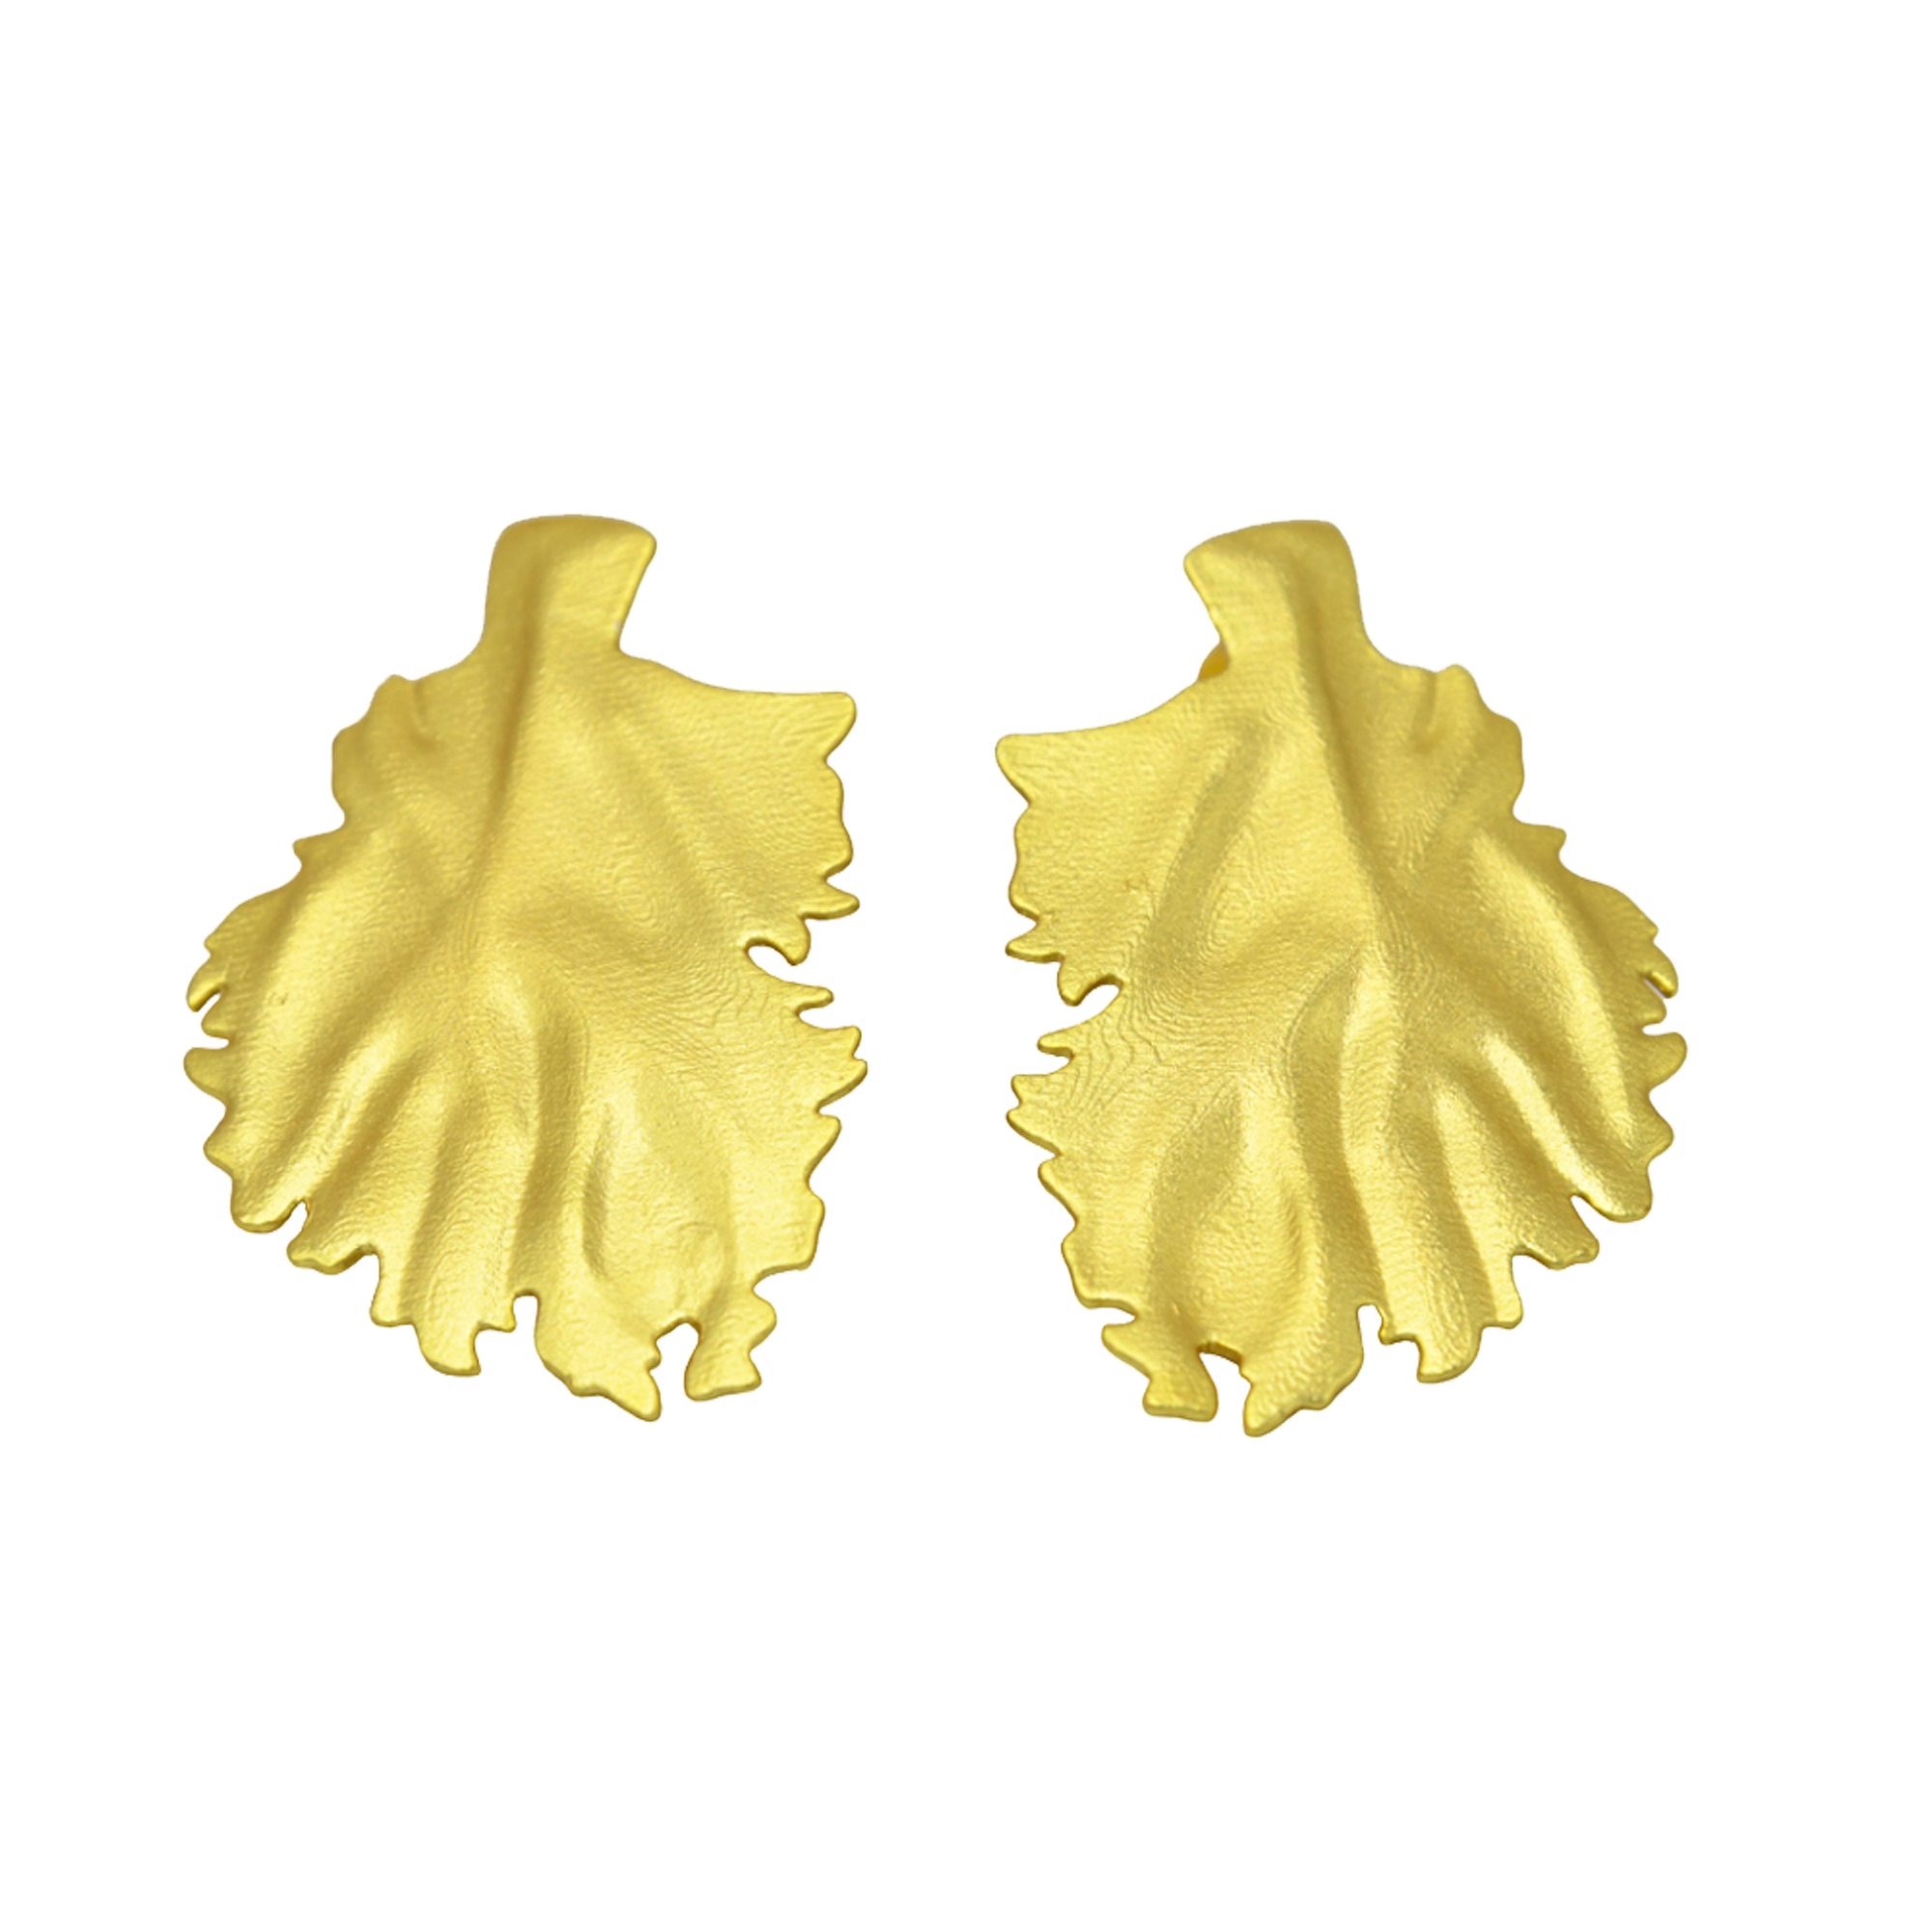 Golden Leaf Stud Earring - DeKulture DKW-1421-SEJ